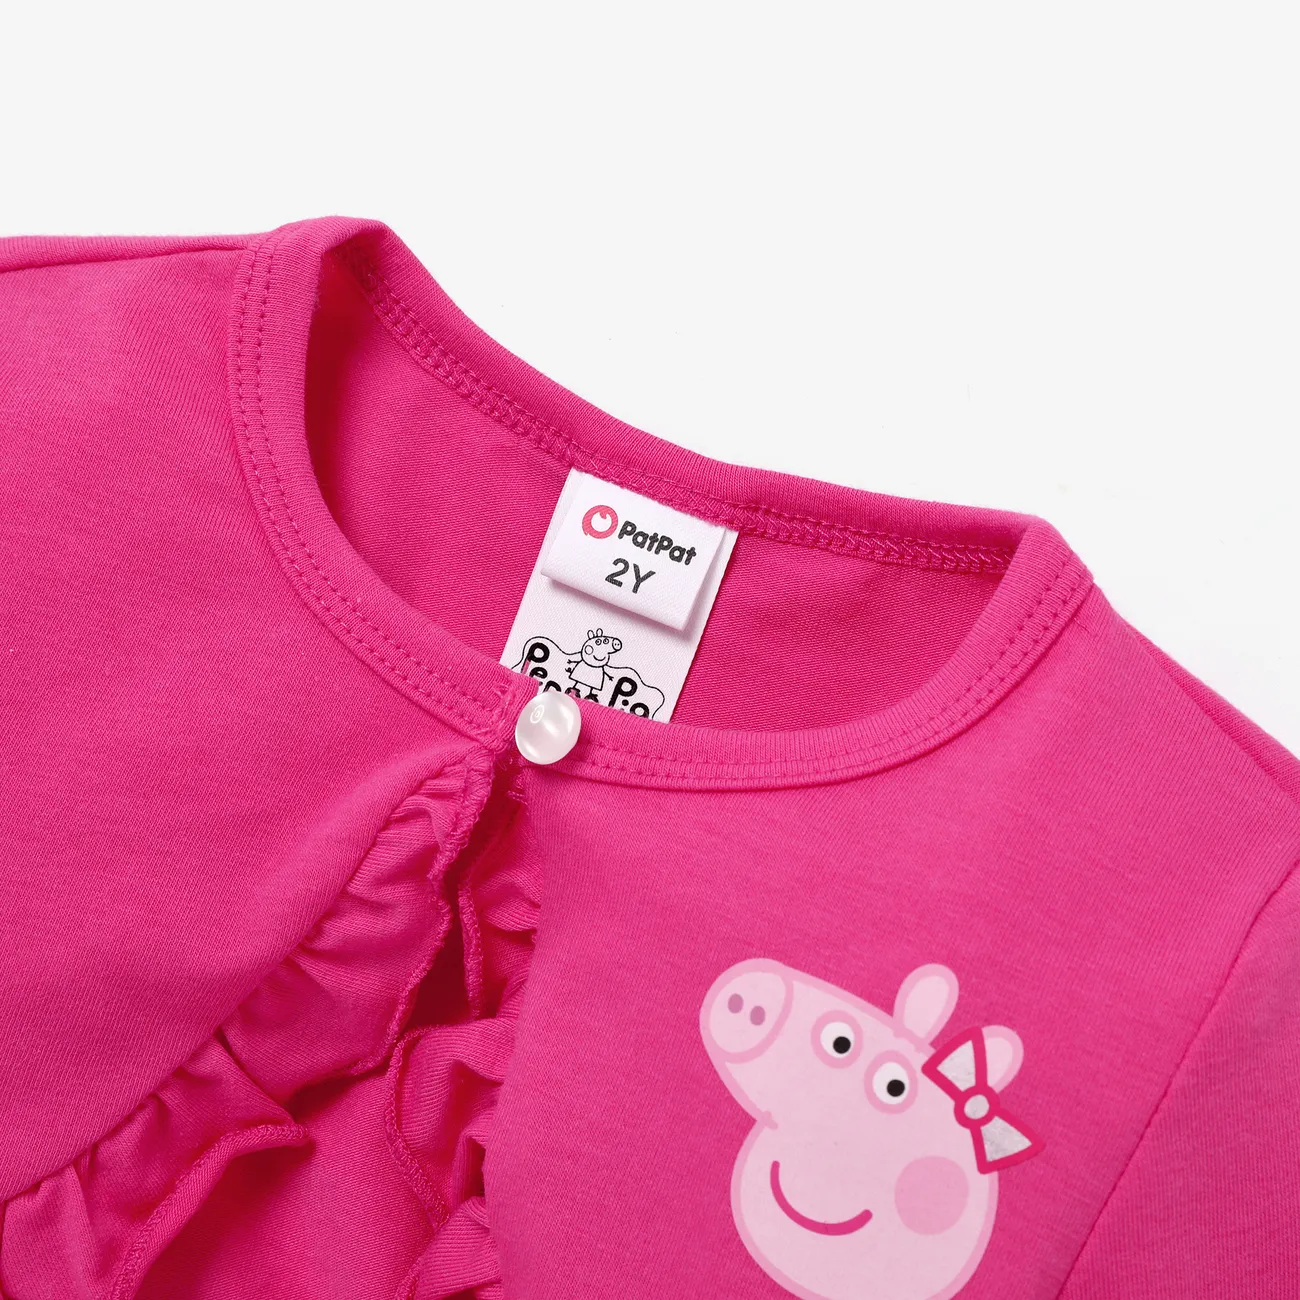 Peppa خنزير طفل فتاة قصيرة الأكمام معطف الفطريات والحب طباعة الشاشة اللباس  روزو big image 1